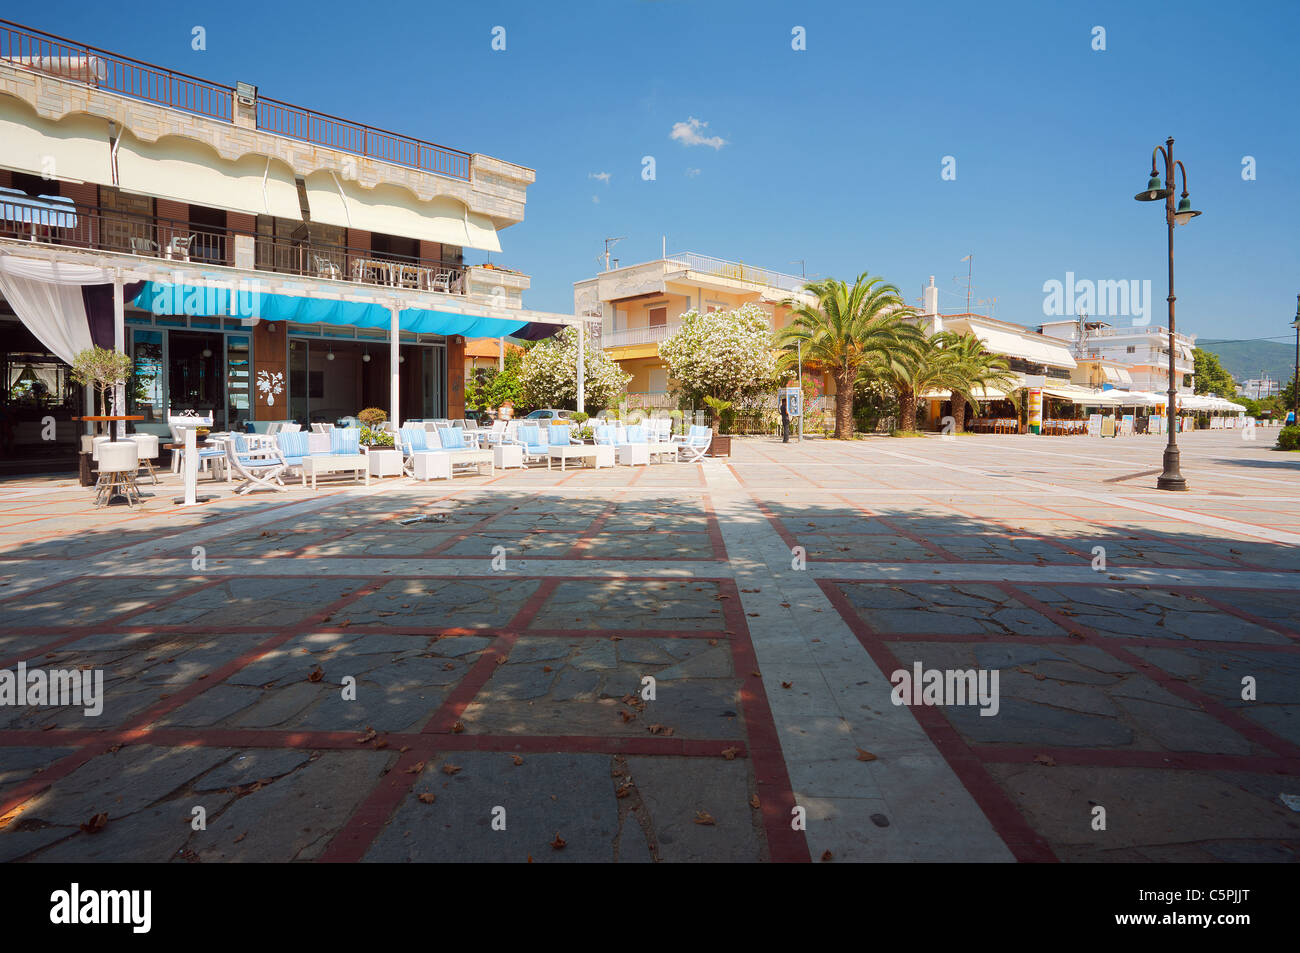 Street of Asprovalta in Greece, summer season. Stock Photo